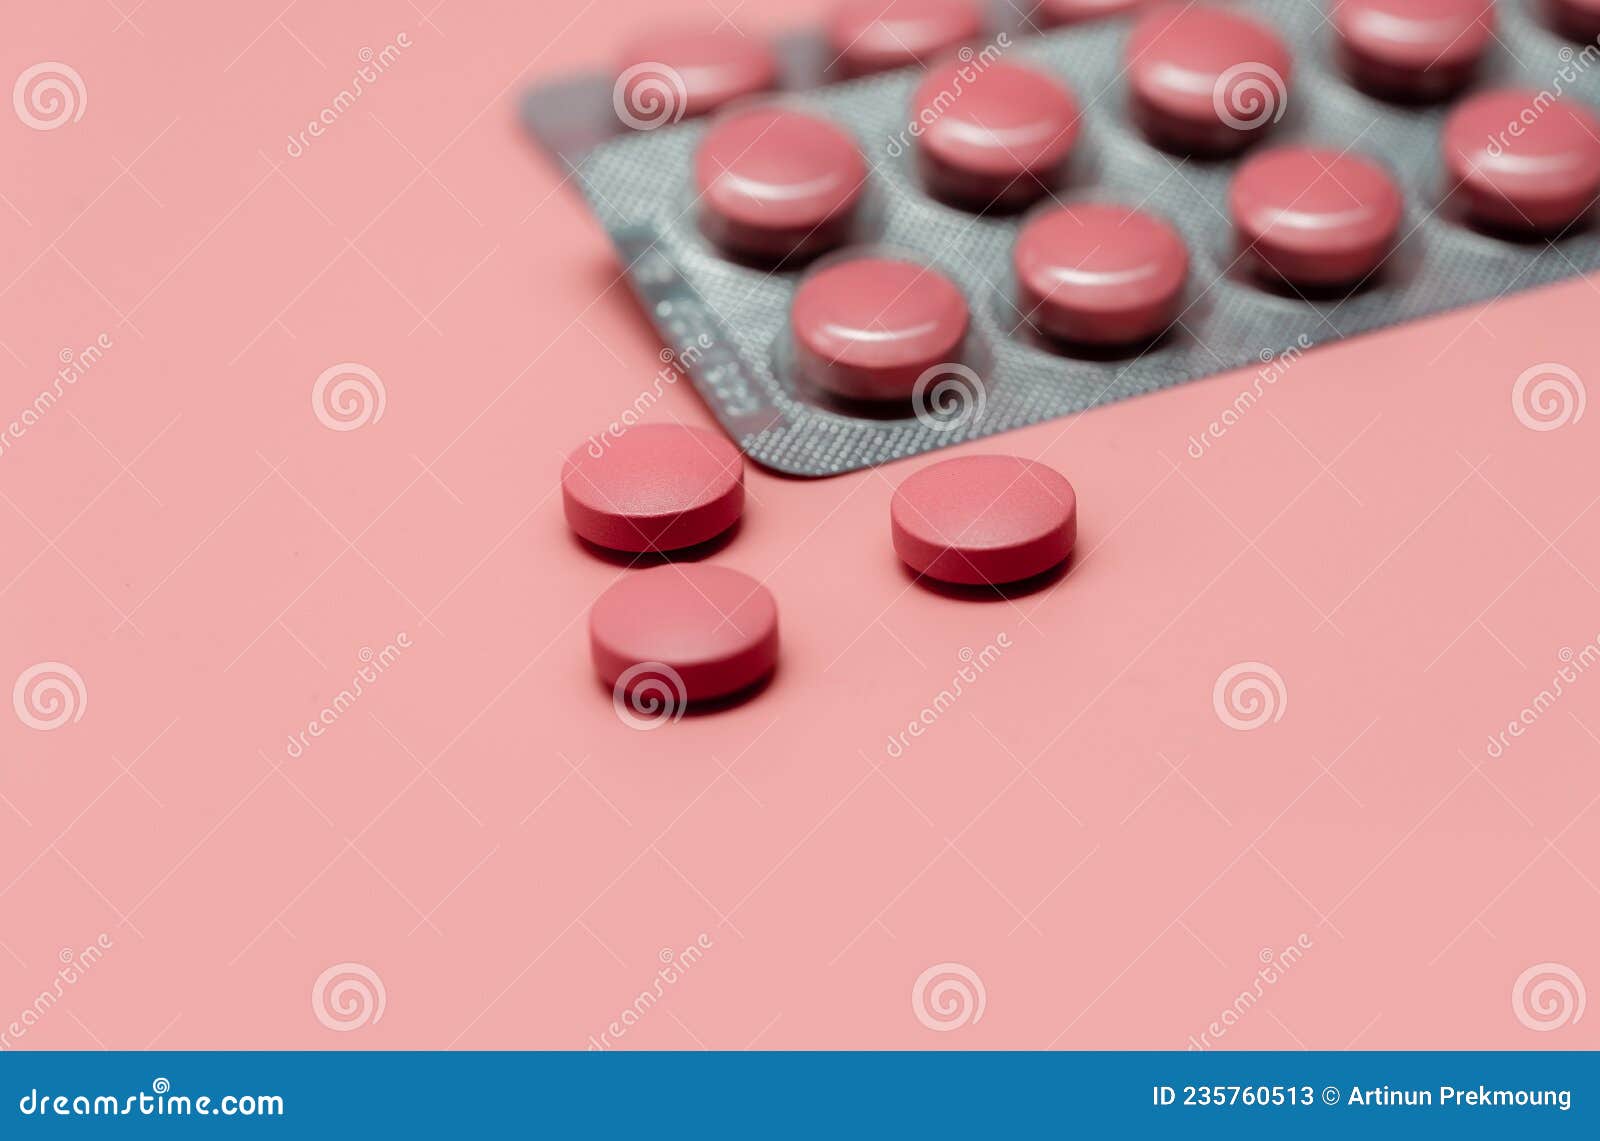 Pastiglie Rosa Pillole Su Blister Sfocato Confezione Di Pastiglie Pillole  Su Fondo Rosa. Farmaci Da Prescrizione. Concetto Di Salu Immagine Stock -  Immagine di dose, aspirina: 235760513